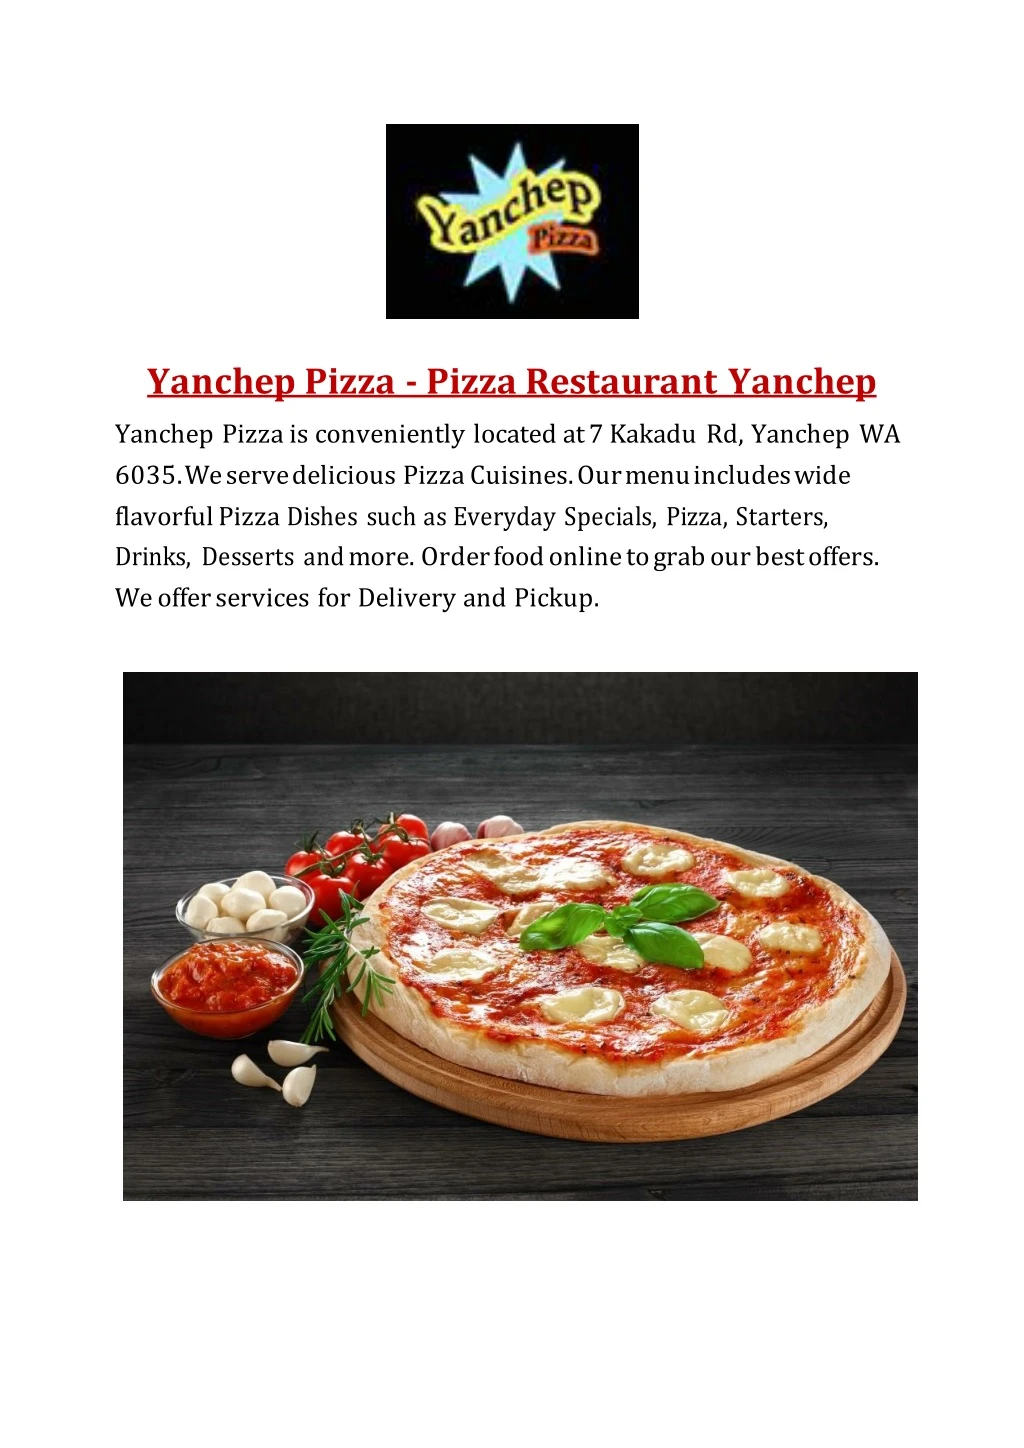 yanchep pizza pizza restaurant yanchep